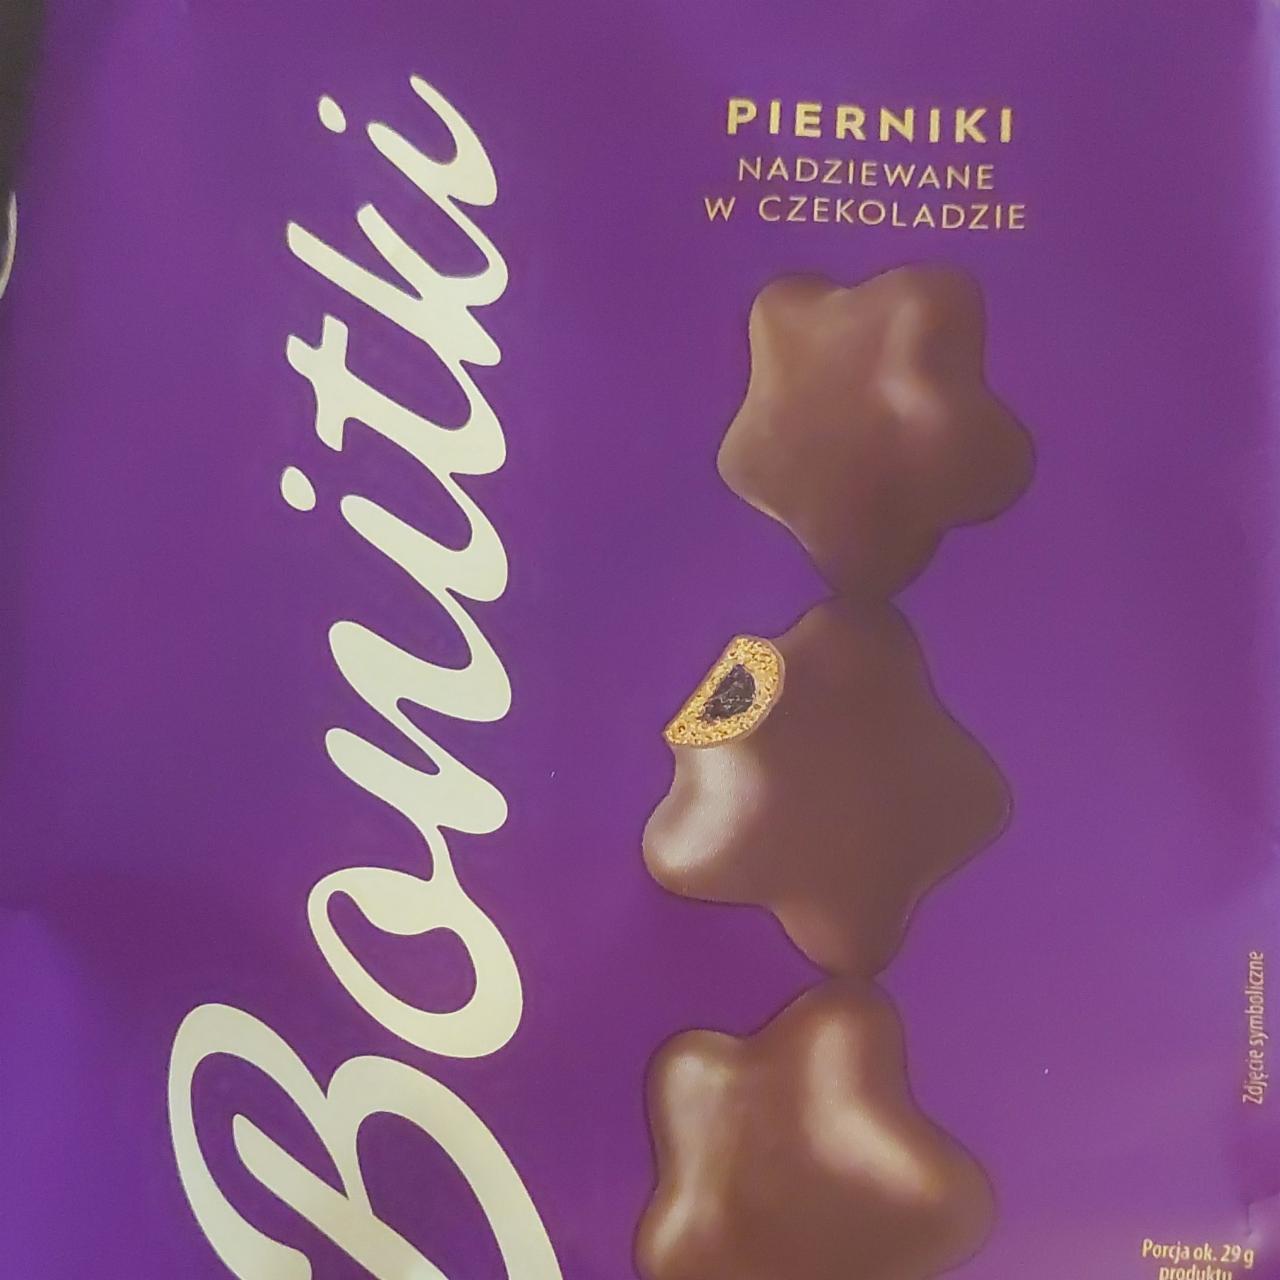 Фото - Pierniki nadziewane w czekoladzie Bonitki